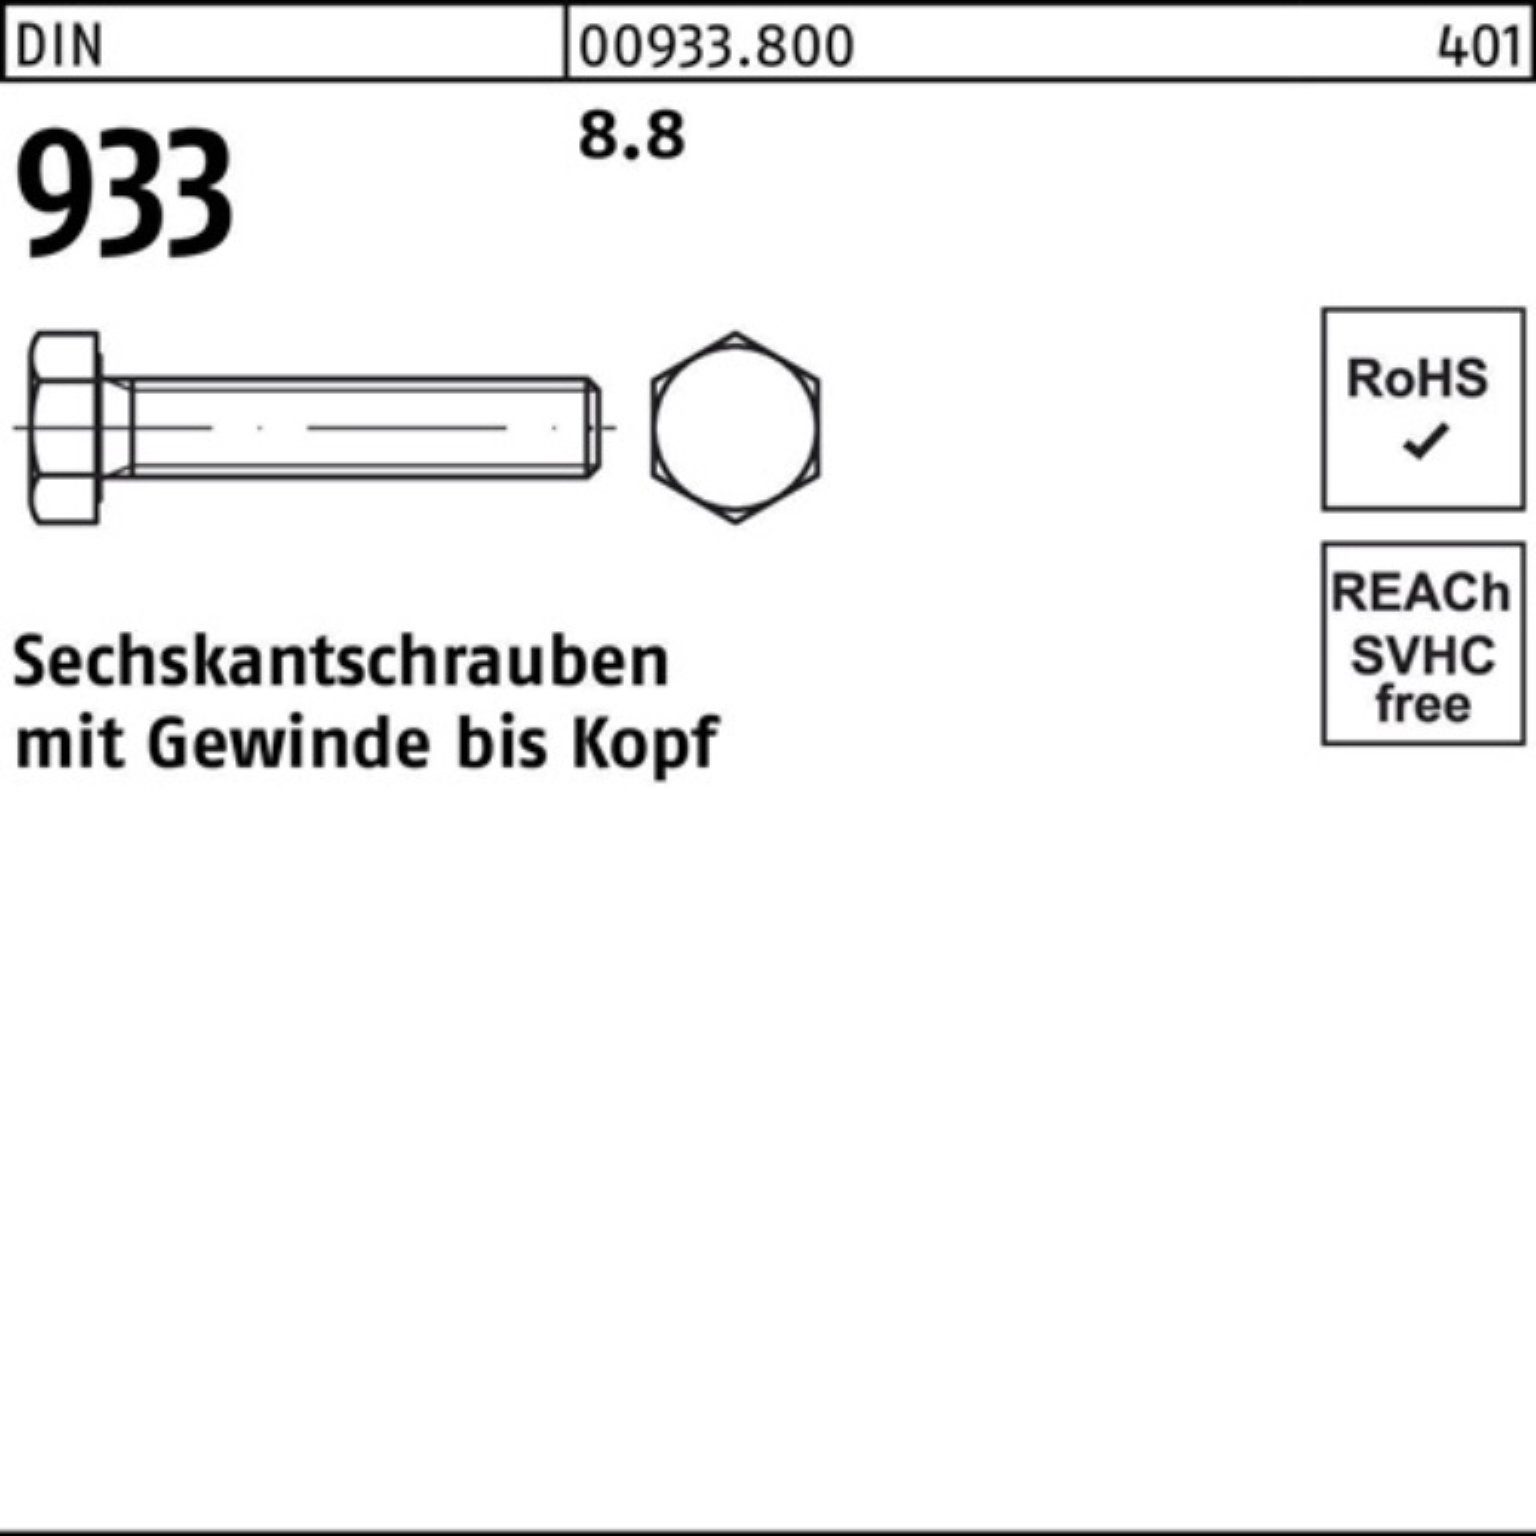 Reyher Sechskantschraube 100er 933 Pack 933 Sechskantschraube Stück 50 M14x 100 DIN VG 8.8 DIN